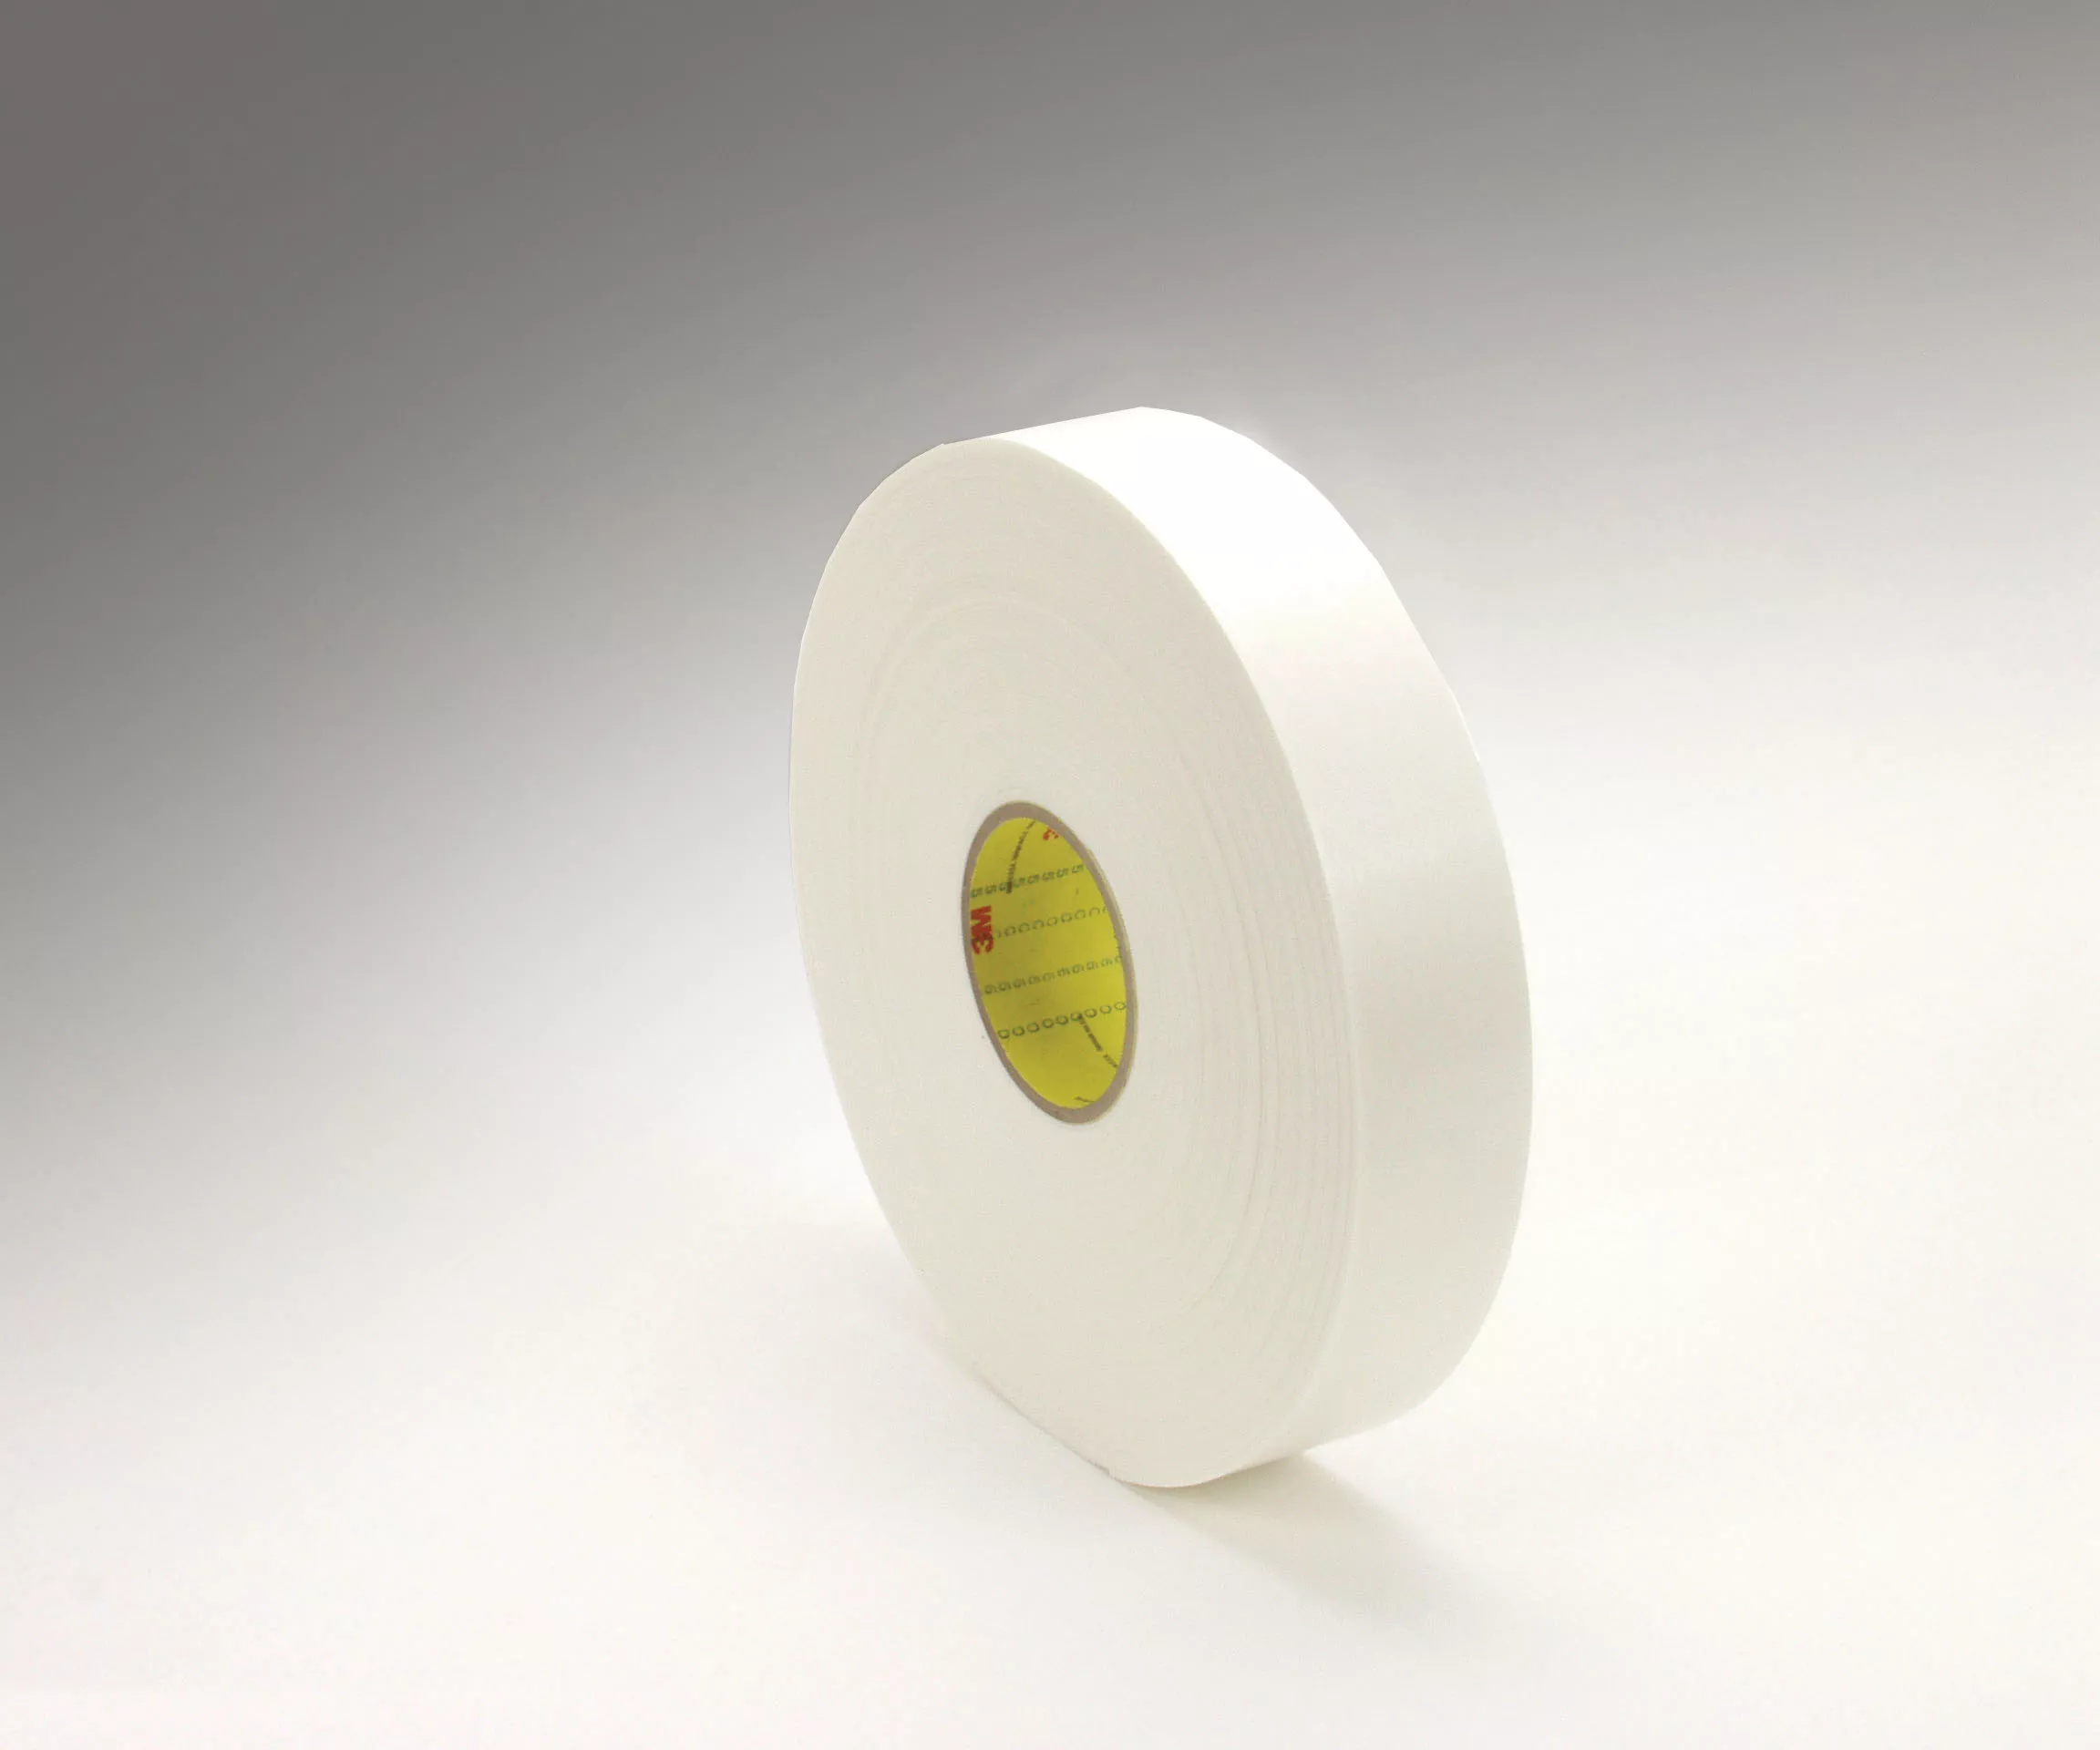 3M™ Double Coated Polyethylene Foam Tape 4466, White, 1/2 in x 36 yd, 62
mil, 18 Roll/Case